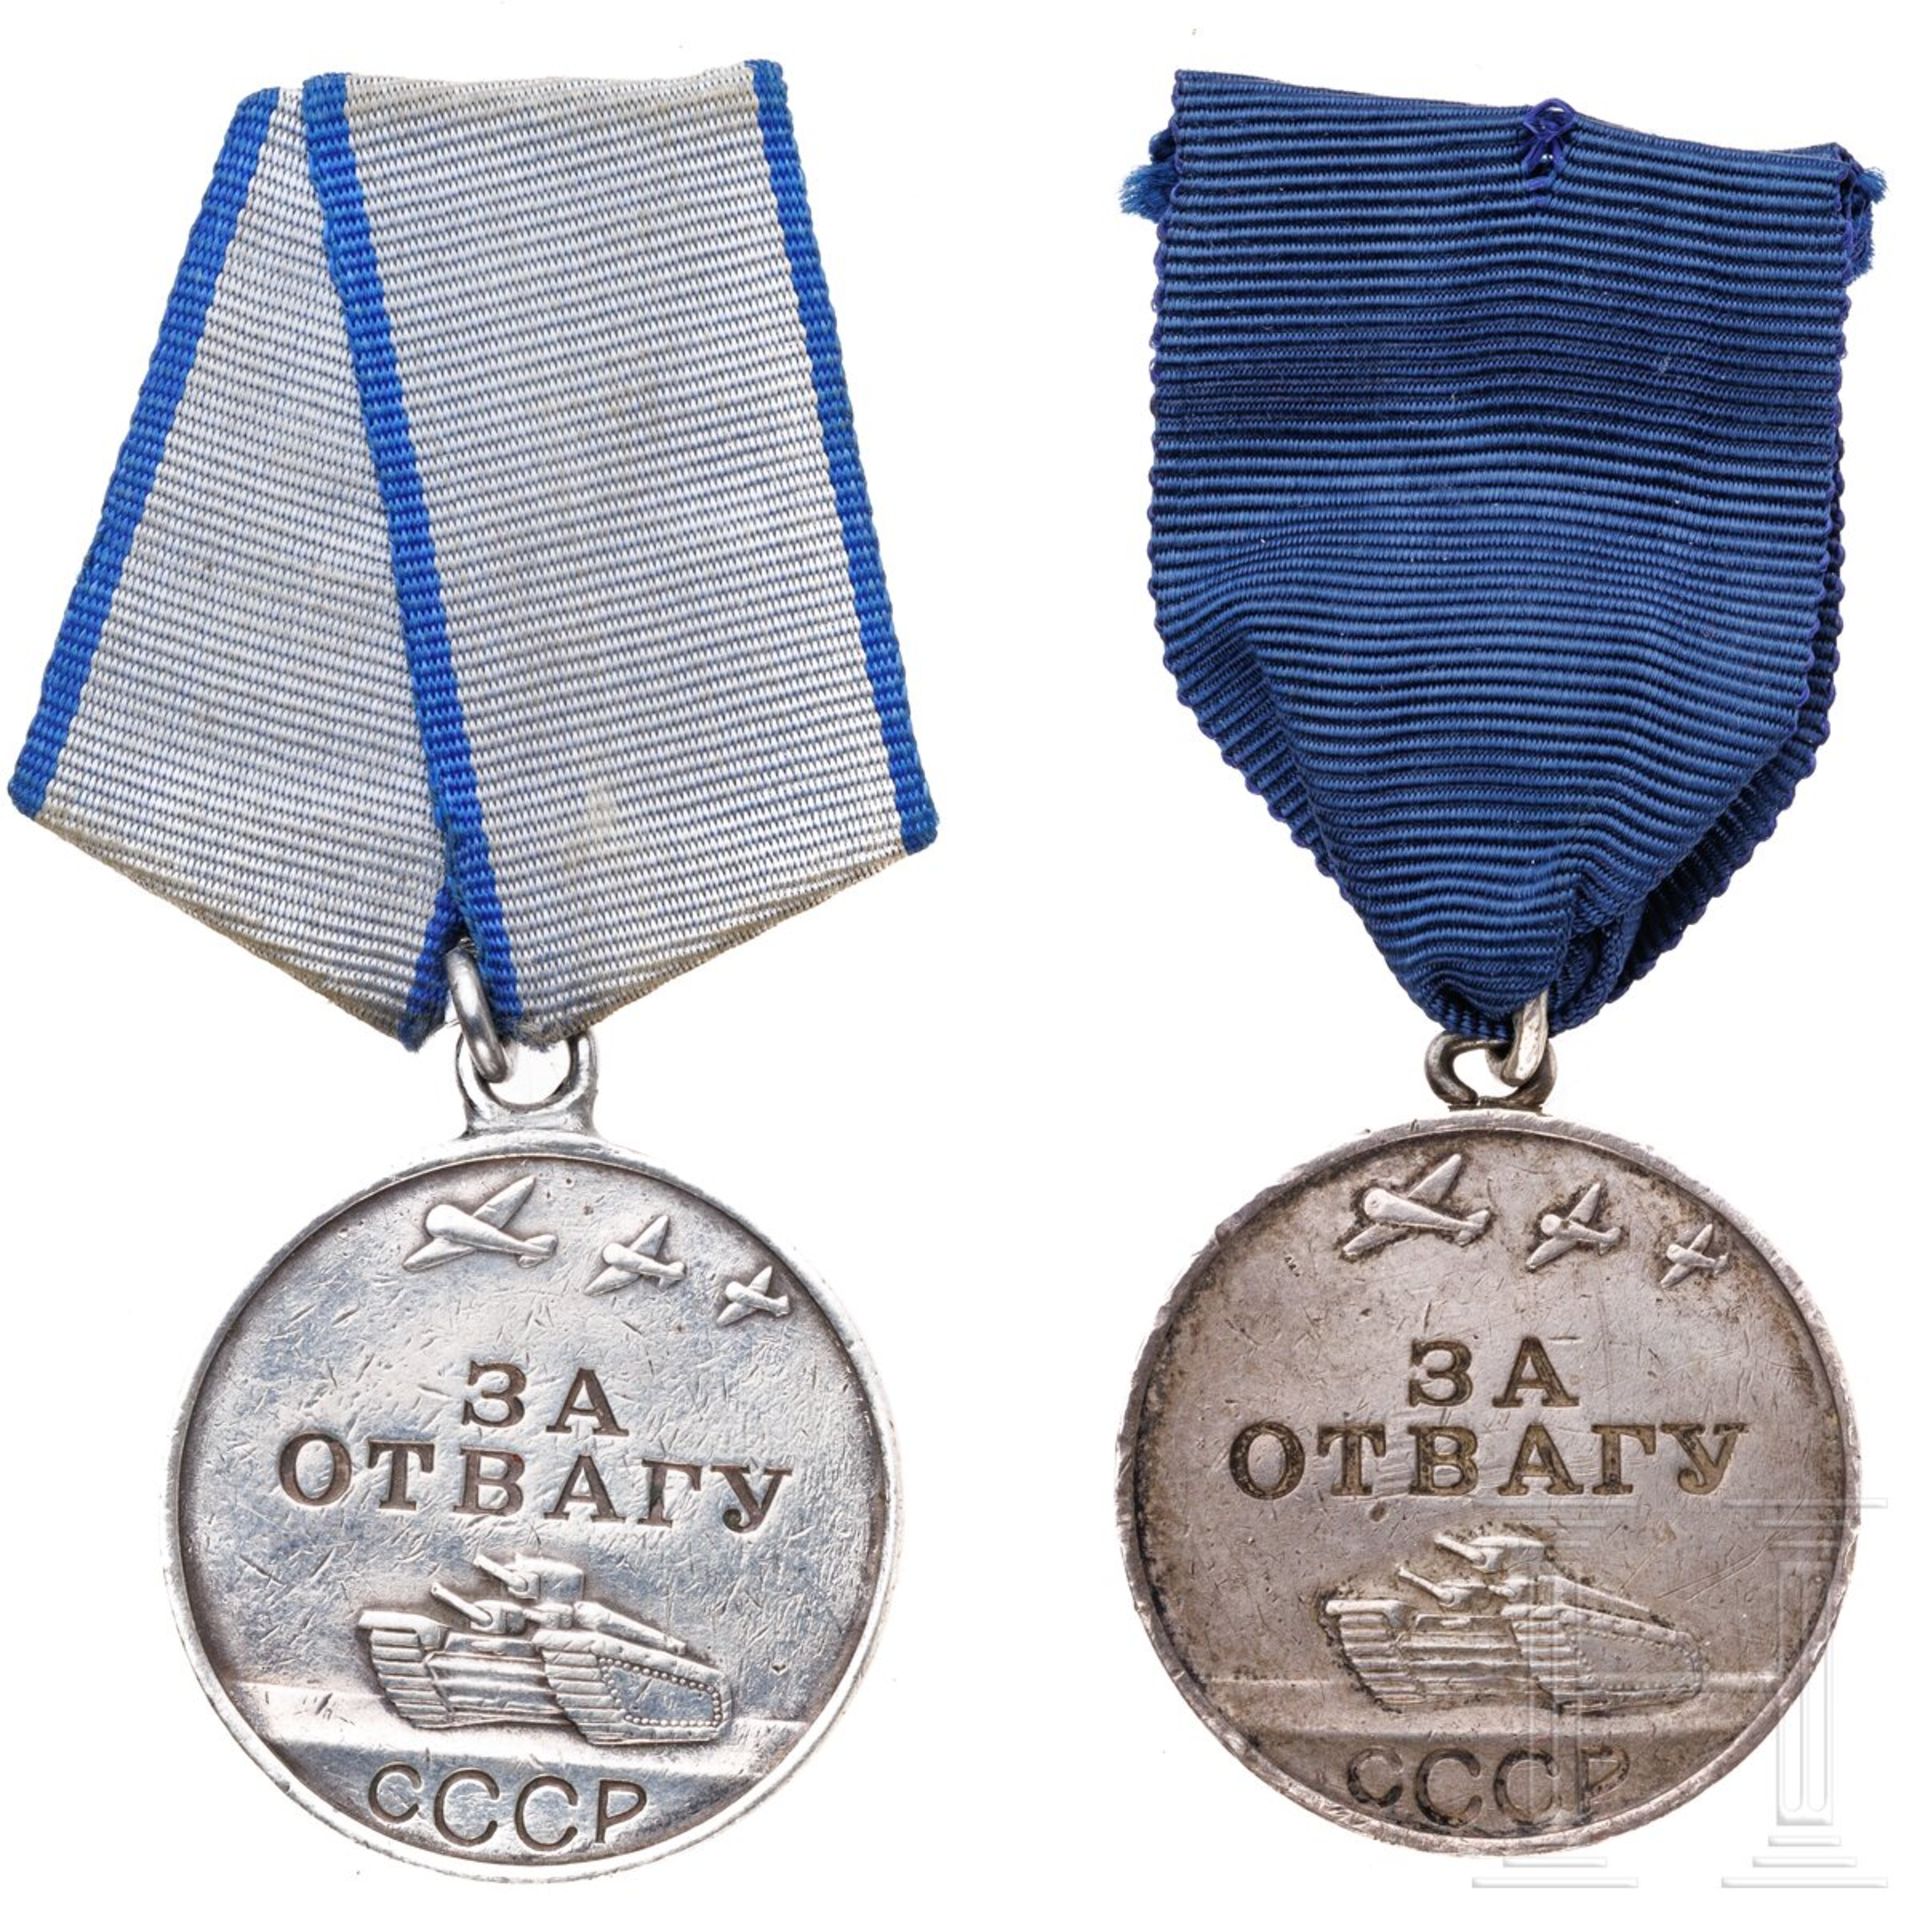 28 Medaillen und 26 Abzeichen, Sowjetunion, ab 1942 - Image 2 of 4